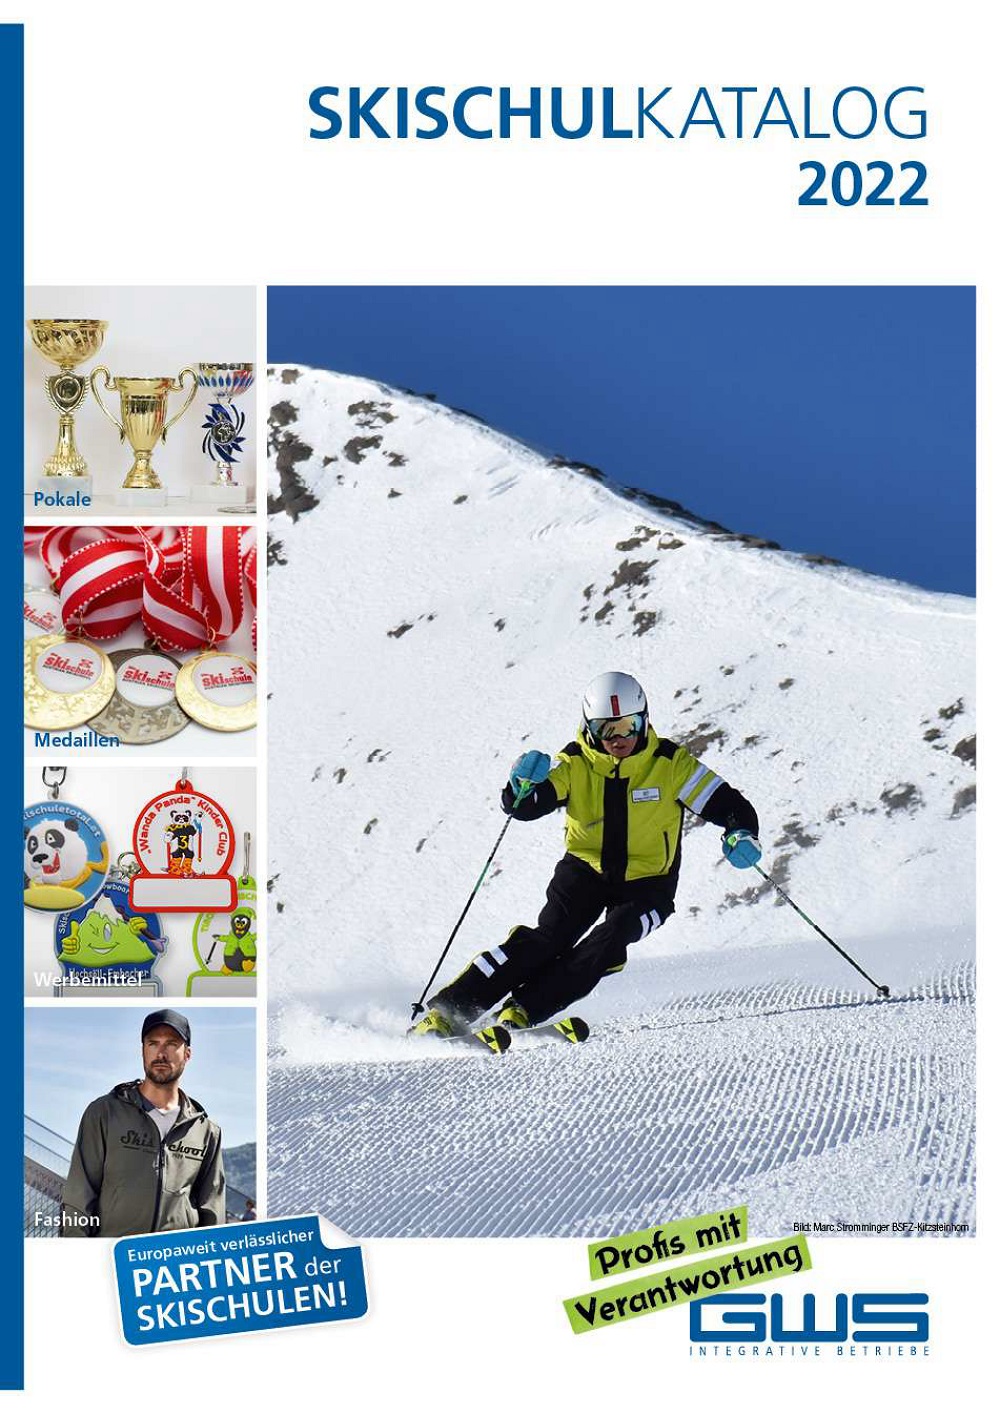 gws skischulkatalog 2019 logo